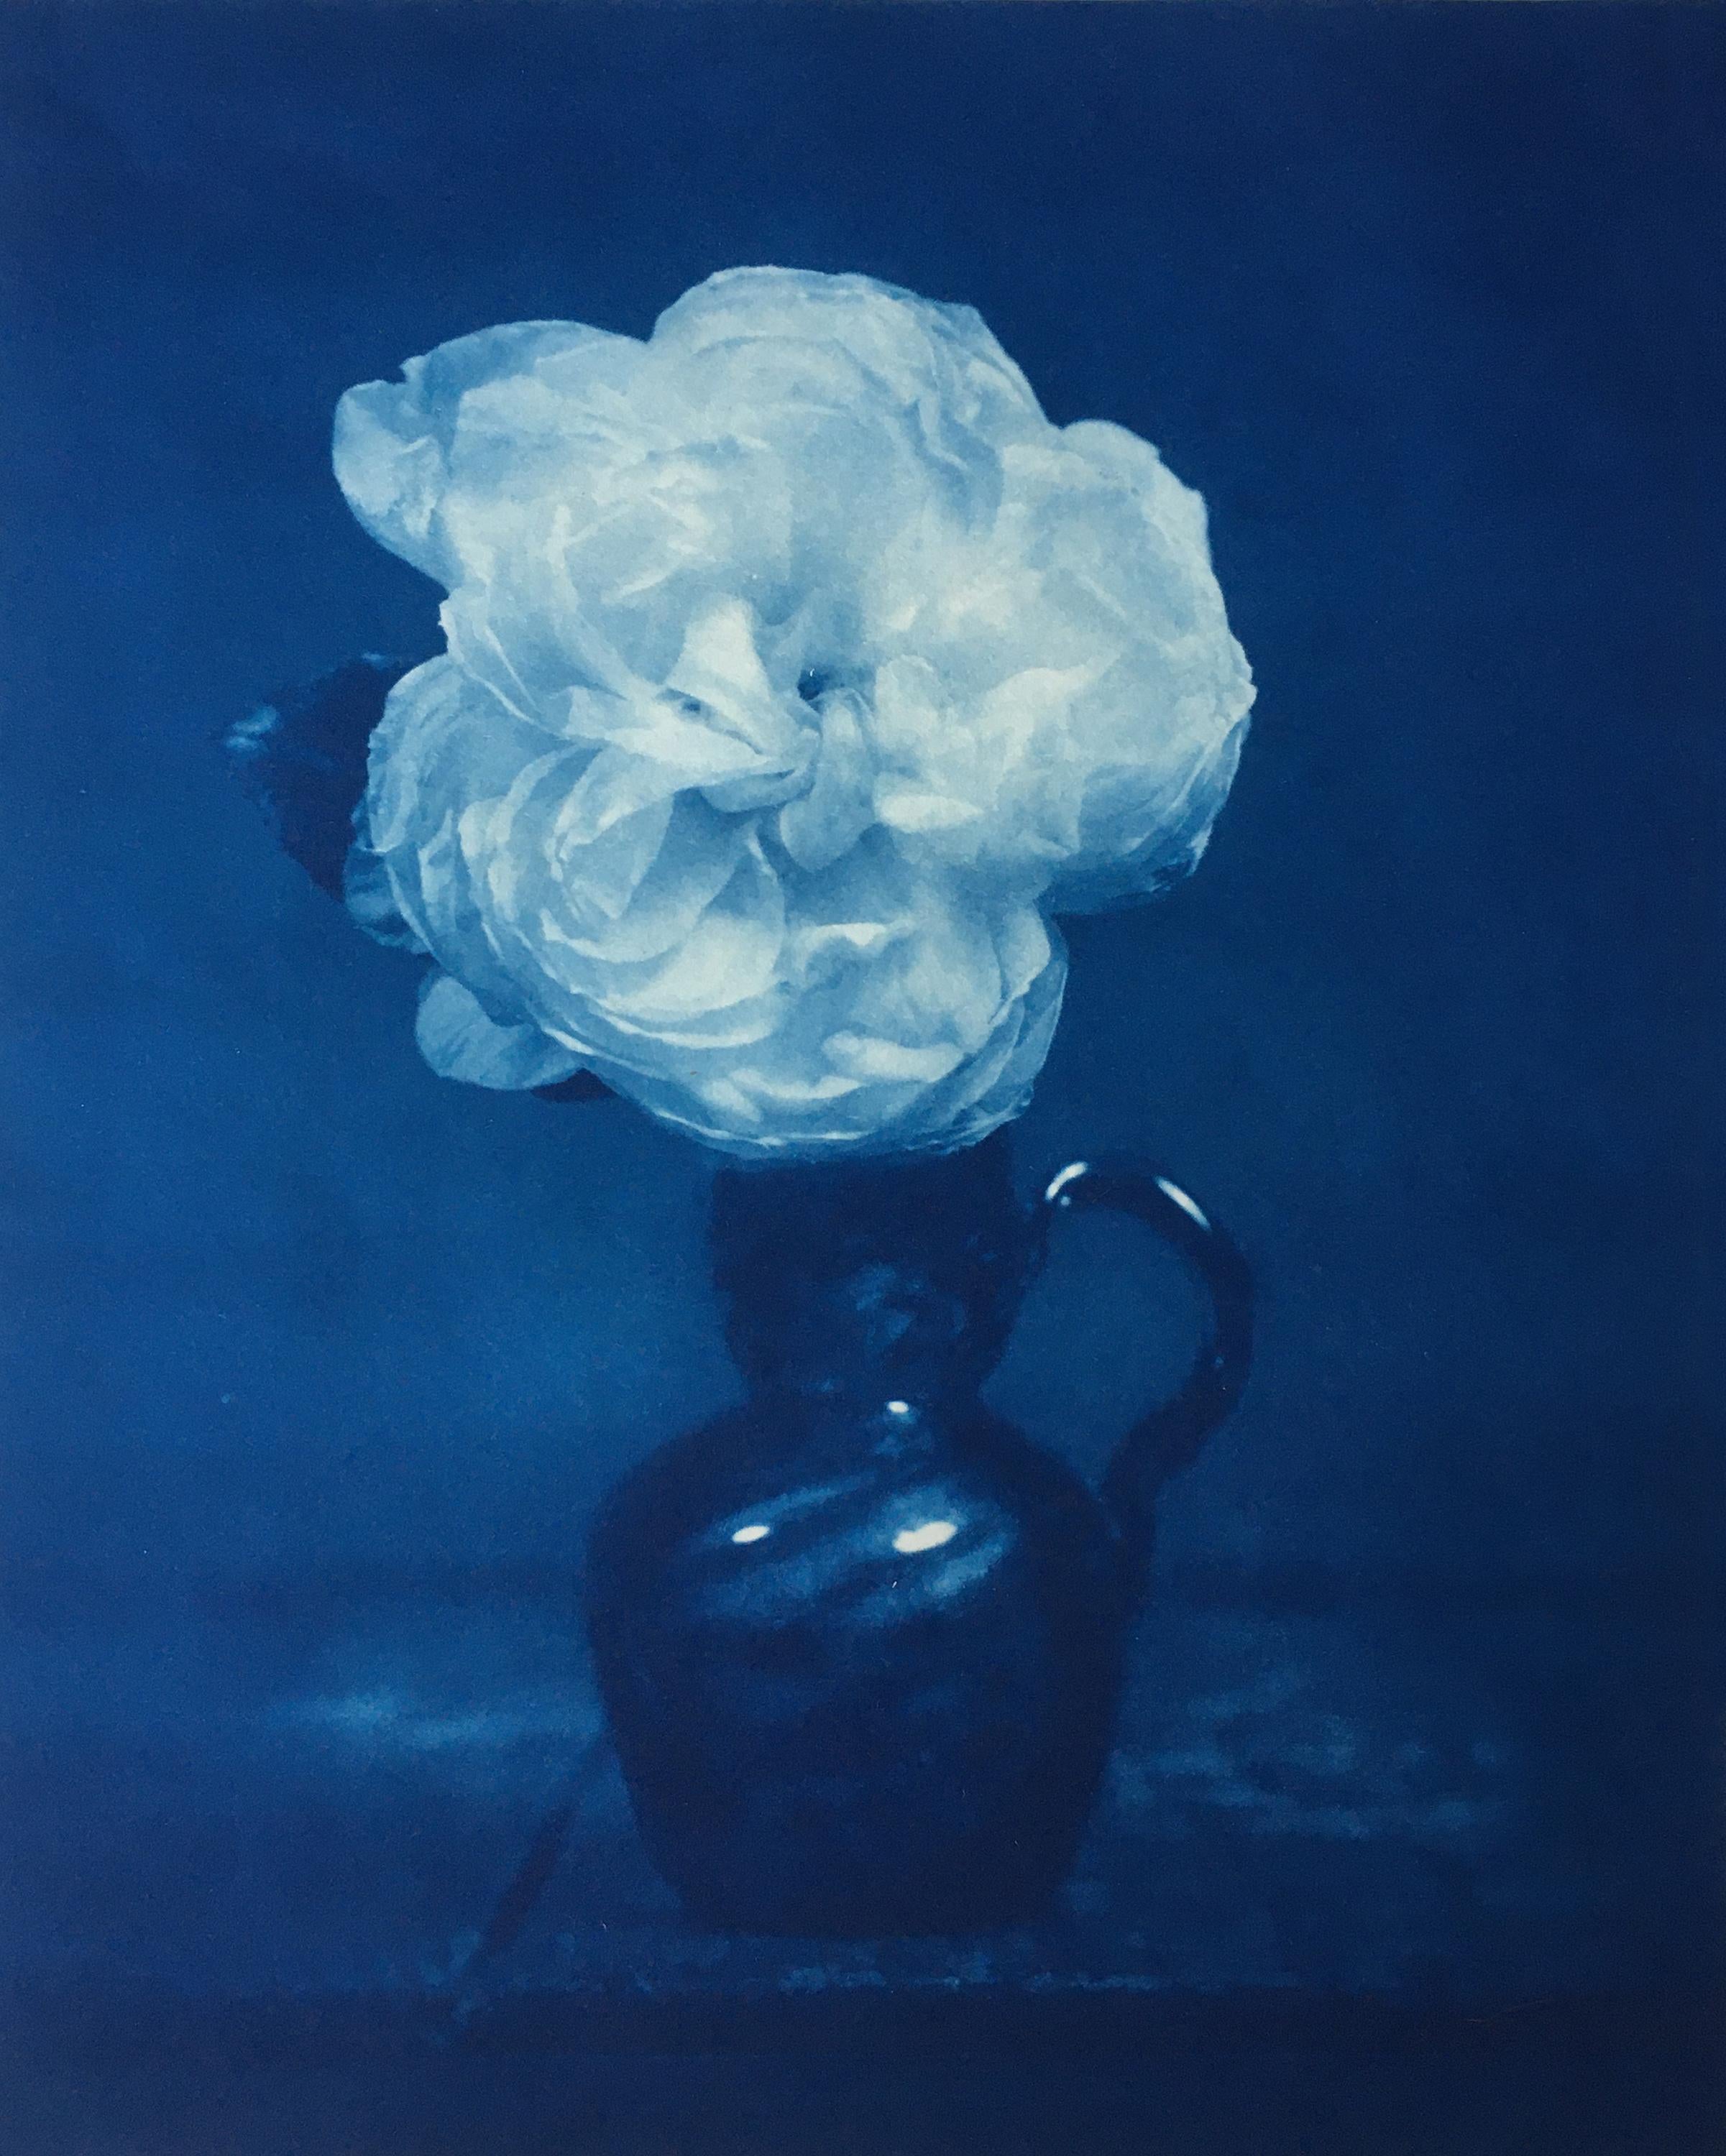 Rose dans un vase en verre bleu (Nature morte romantique - Photo de nature morte au cyanotype, encadrée)